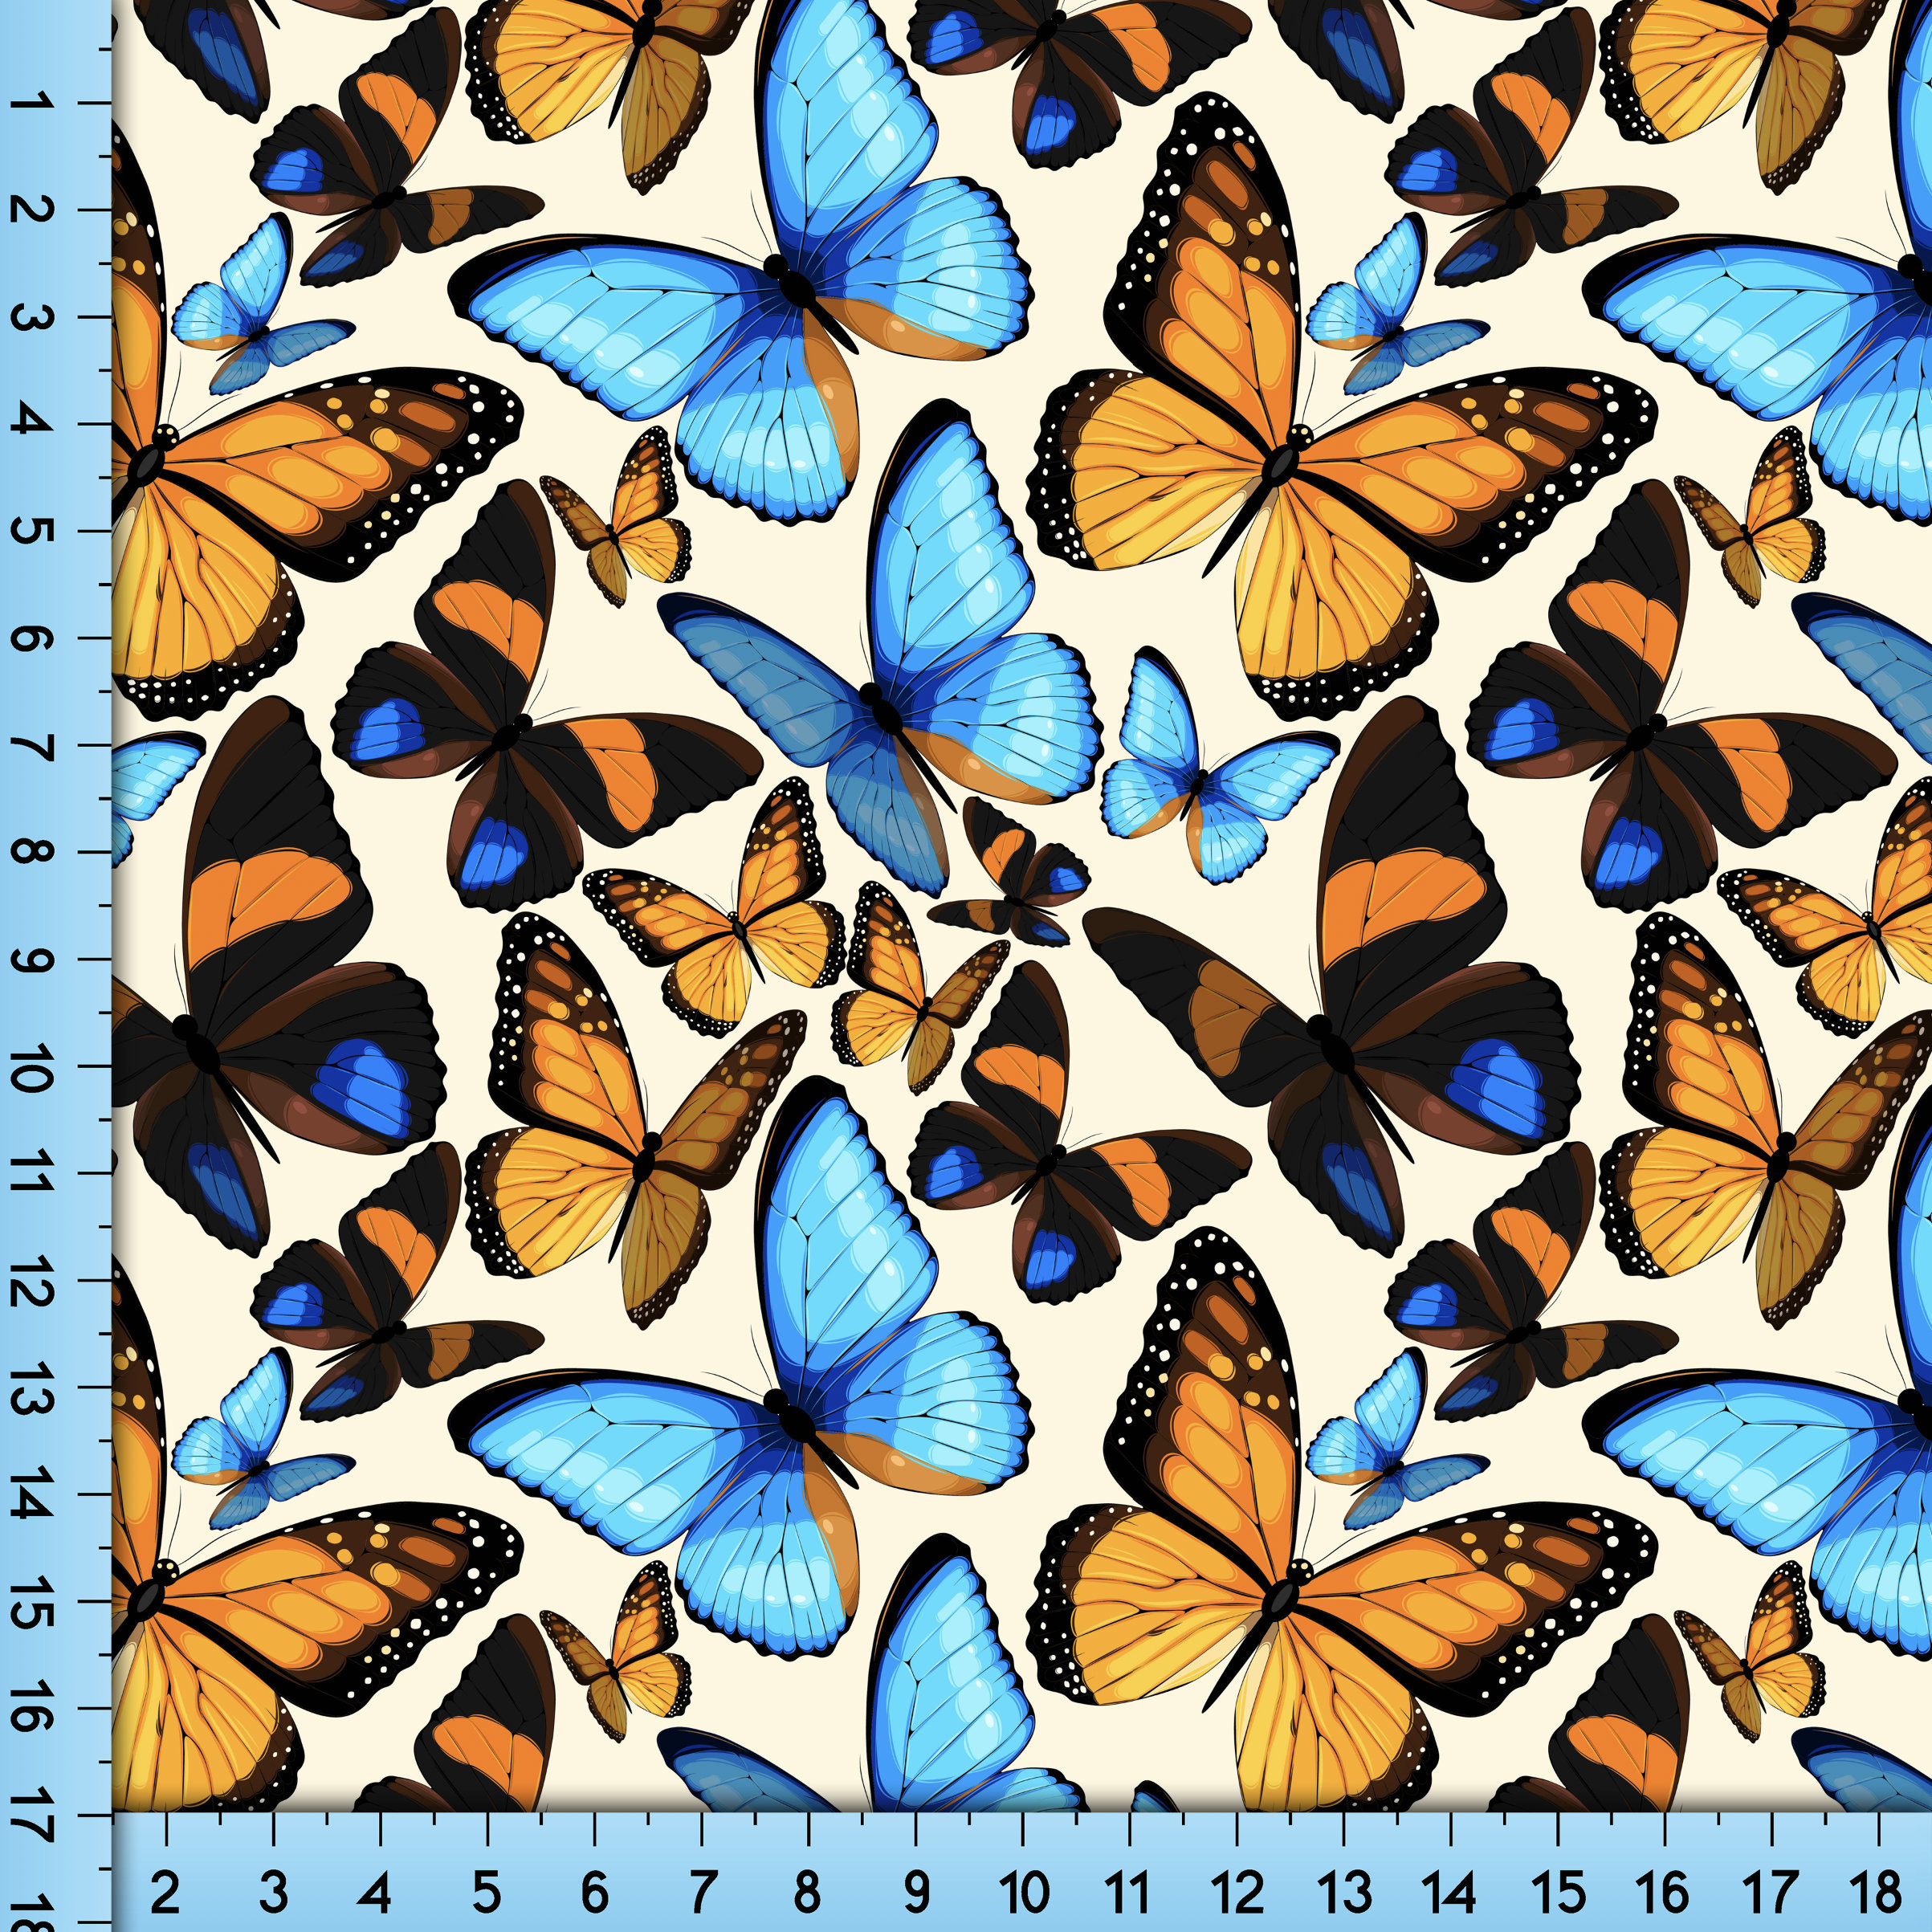 Butterfly Butterflies Spring Flowers Cotton Fabric Robert Kaufman #15394 Yard 